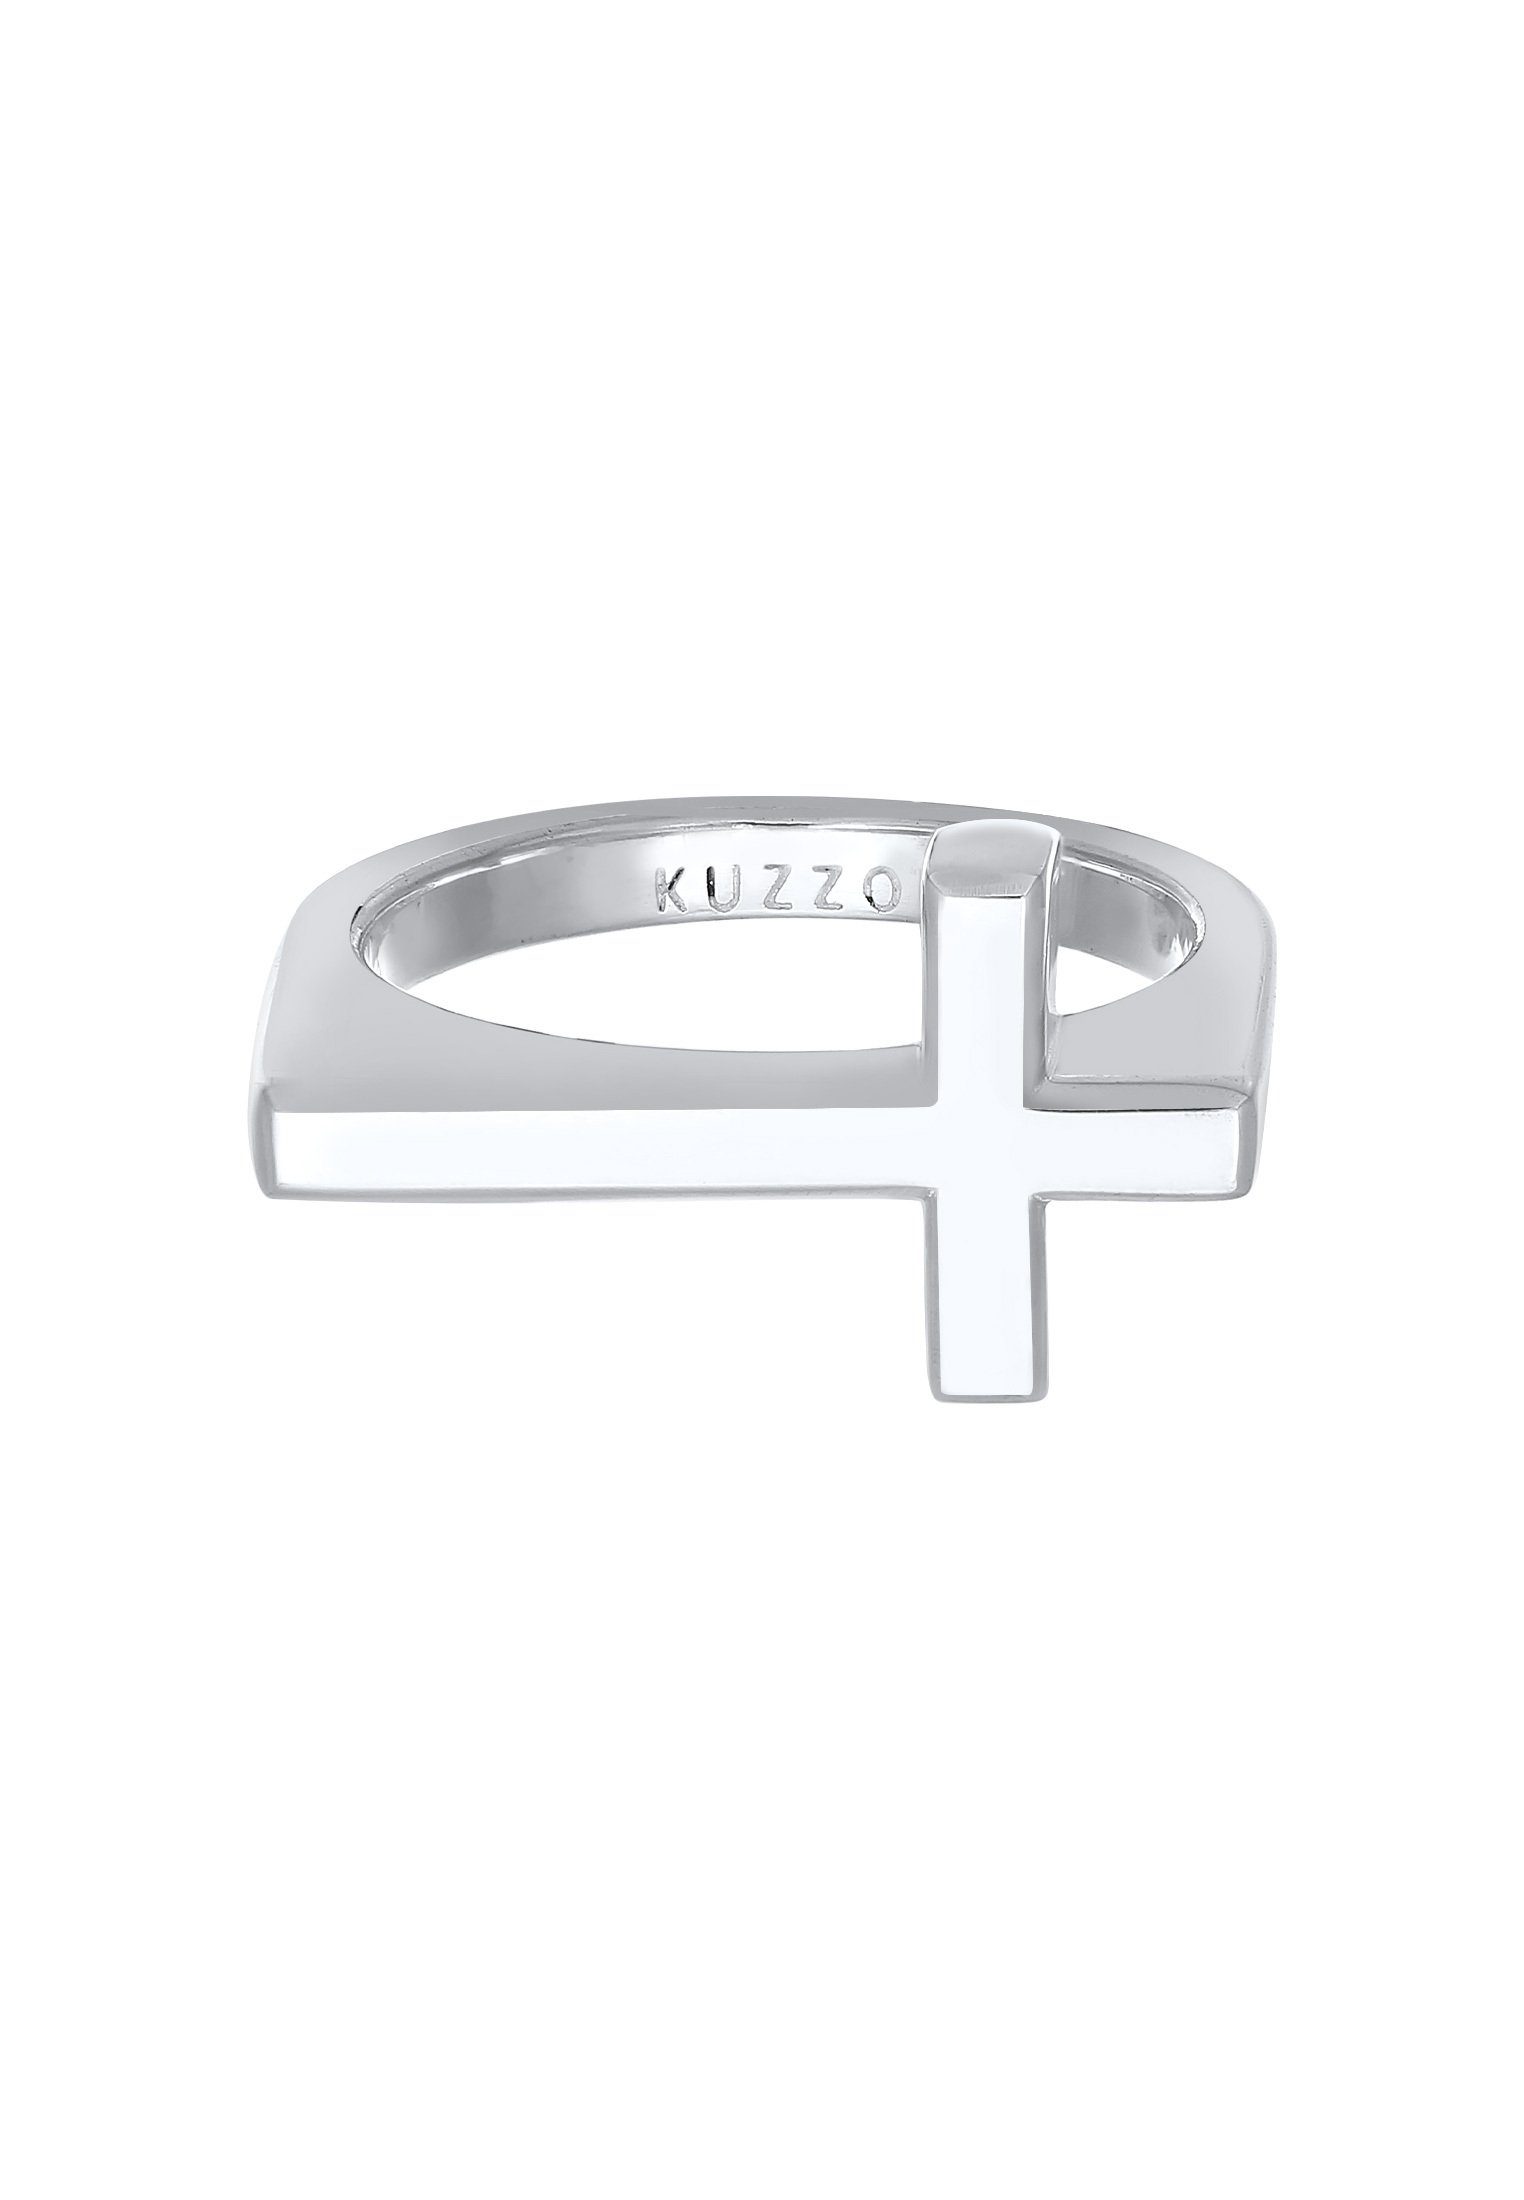 Kuzzoi Silberring Herren Kreuz Modern Schlicht 925 Silber, Trendig  gestalteter Symbol-Ring für den Mann | Silberringe